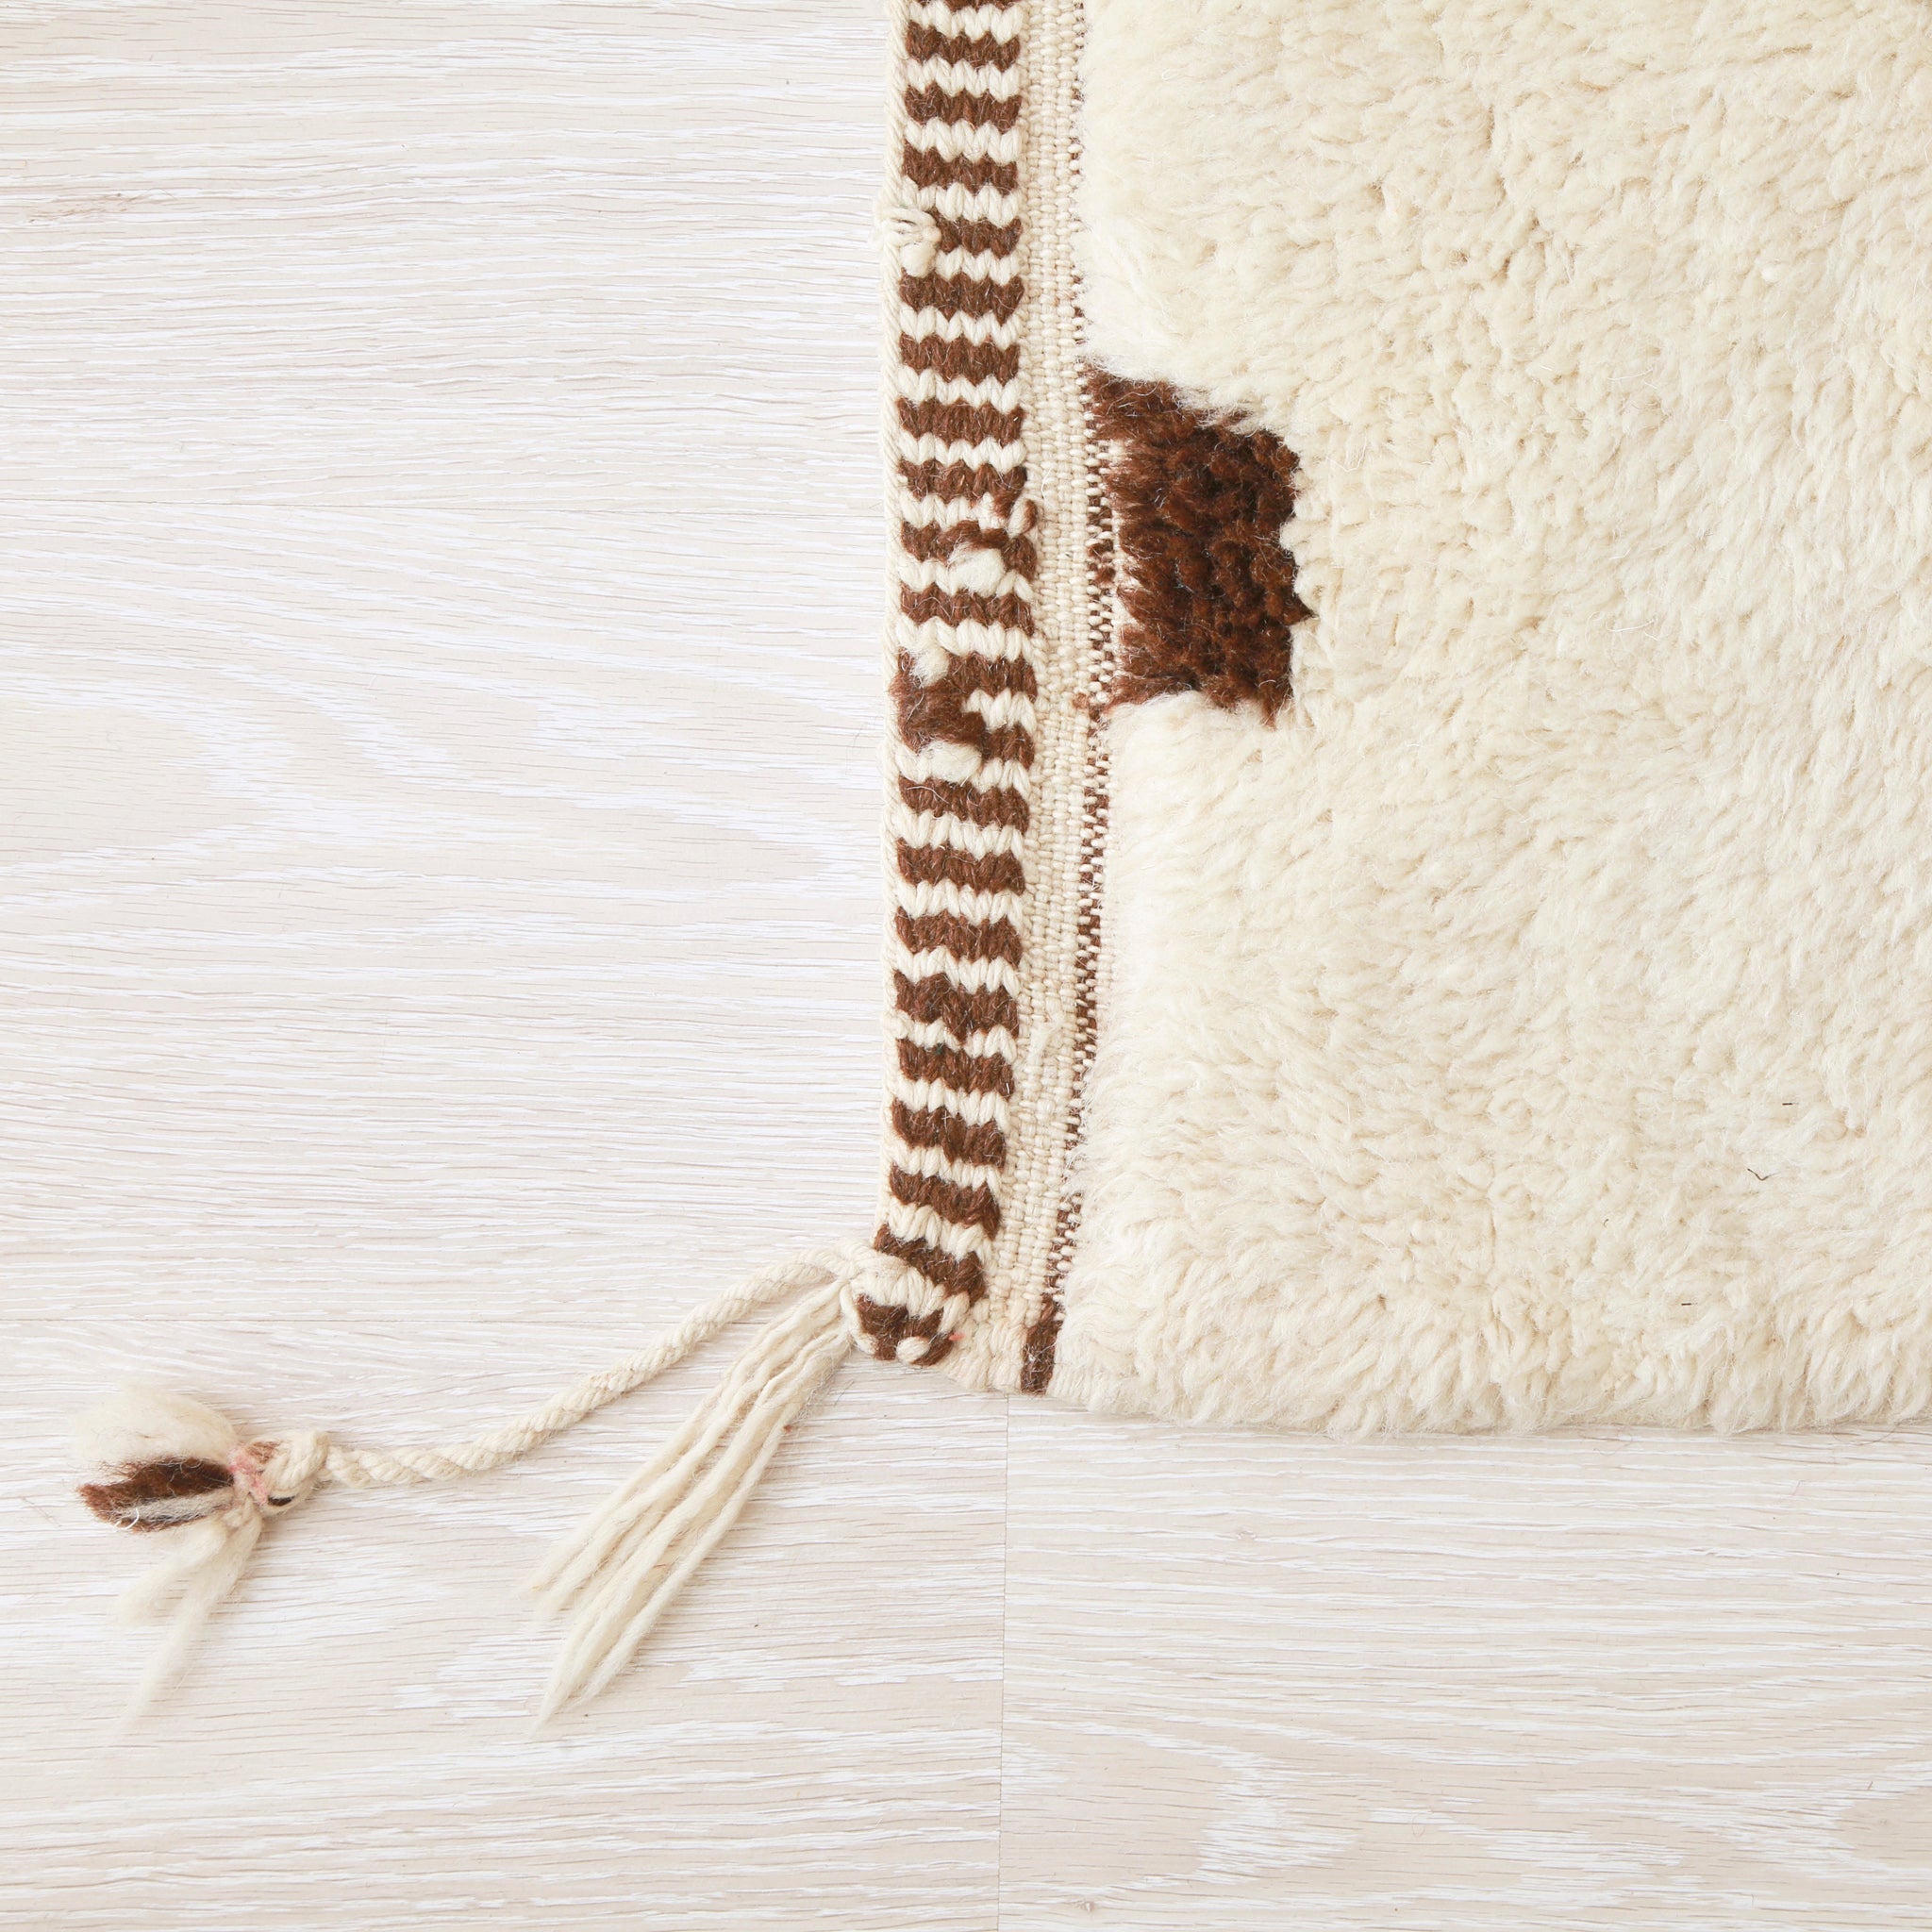 angolo di un tappeto beni mrirt bianco nel quale si nota l'alta qualità della lana non'è la precisione con la quale è stato realizzato il bordo del tappeto con bande sottili bianche e marroni